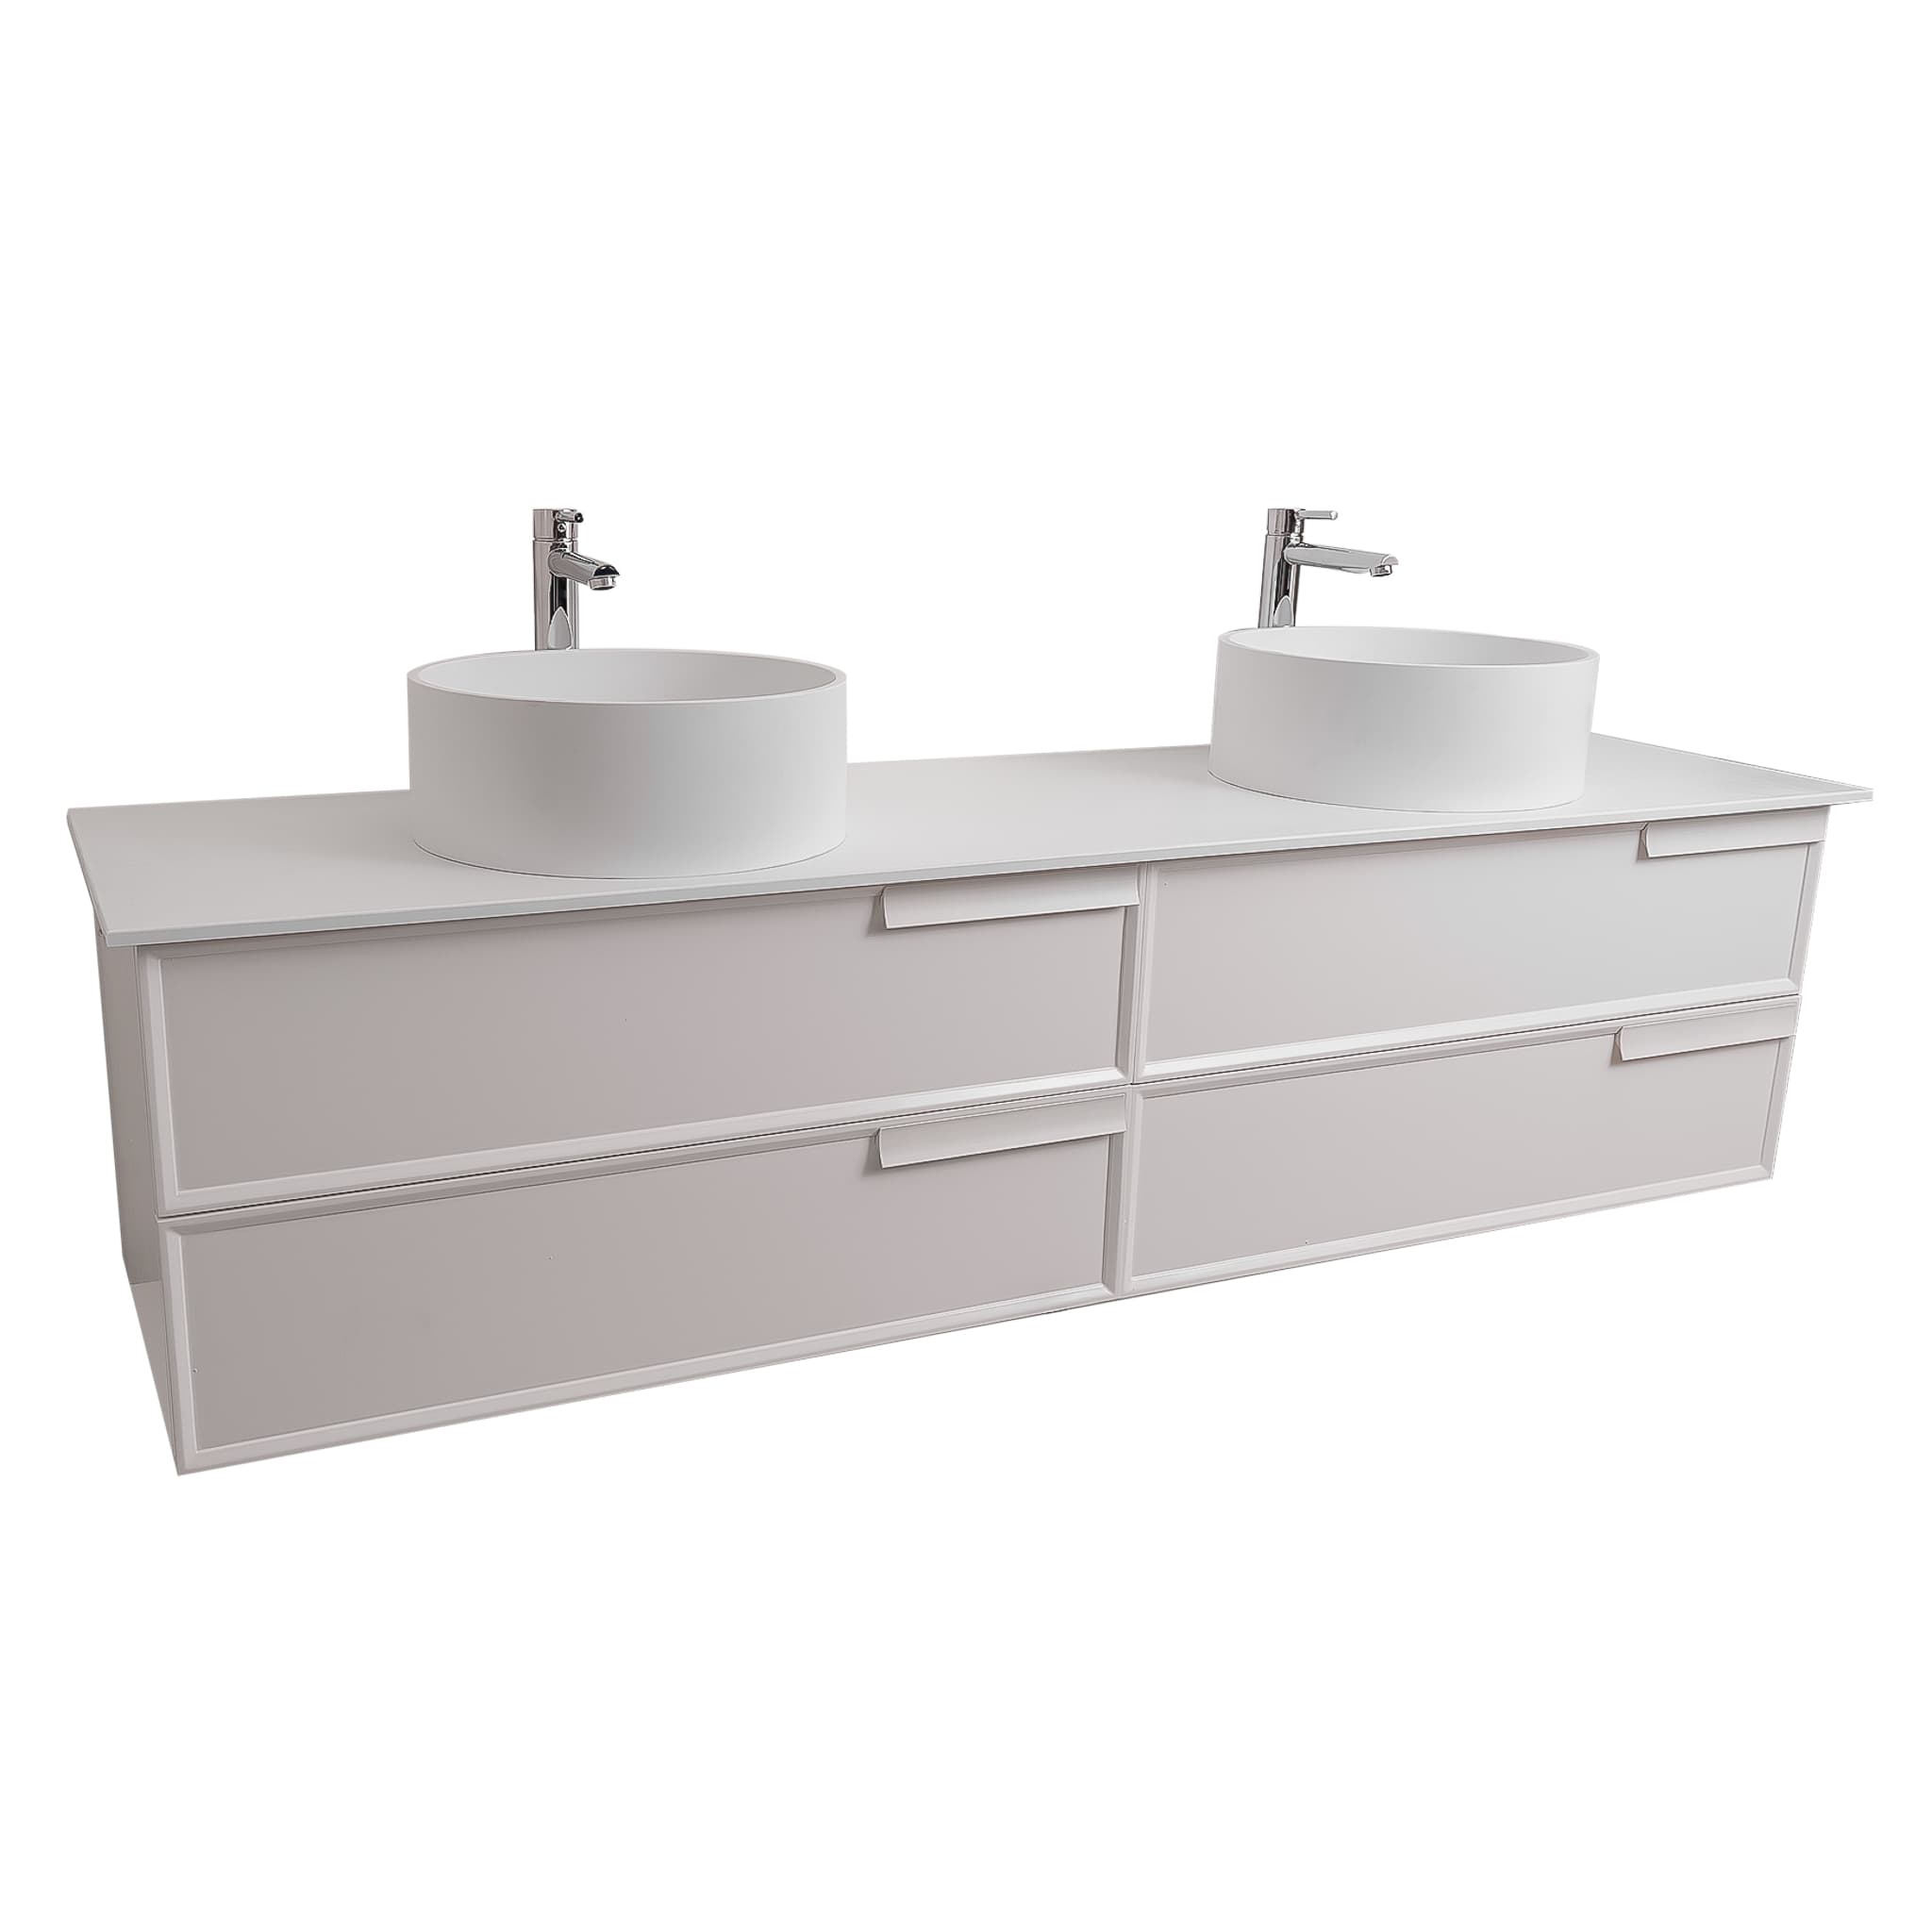 Garda 72 Matte White Cabinet, Solid Surface Flat White Counter and Two Round Solid Surface White Basin 1386, Wall Mounted Modern Vanity Set